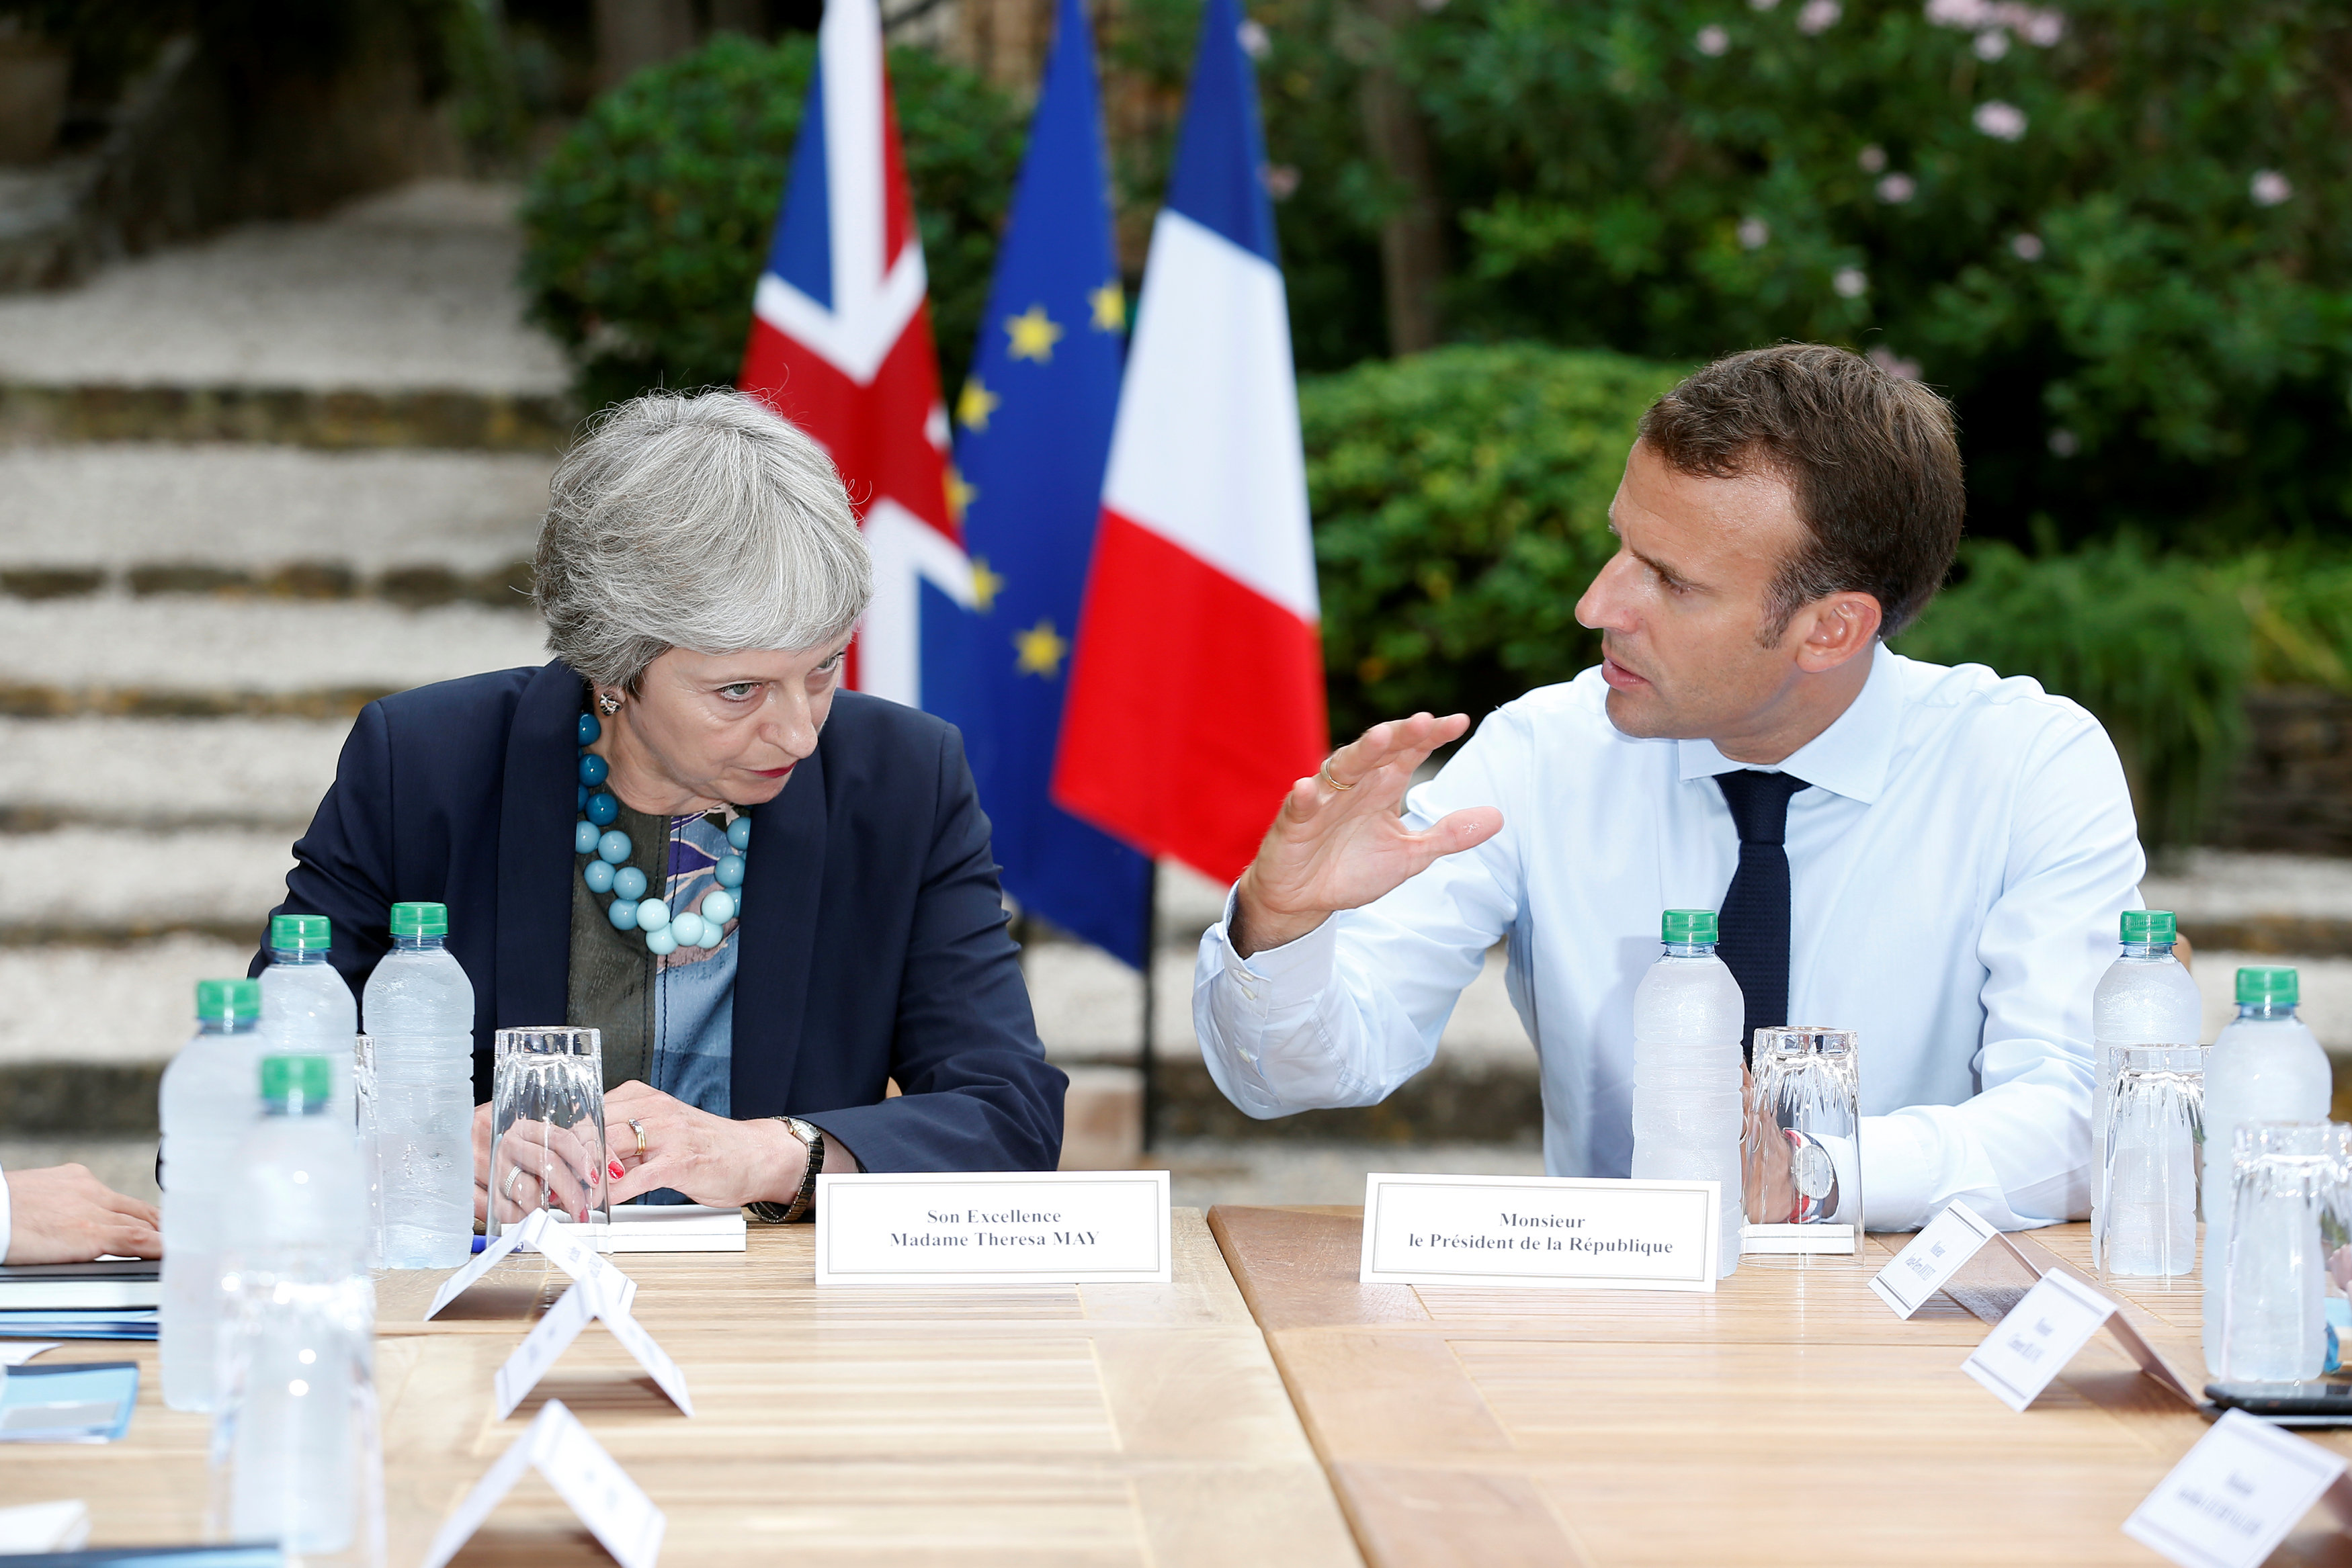 الرئيس الفرنسي يتحدث لرئيسة وزارء بريطانيا